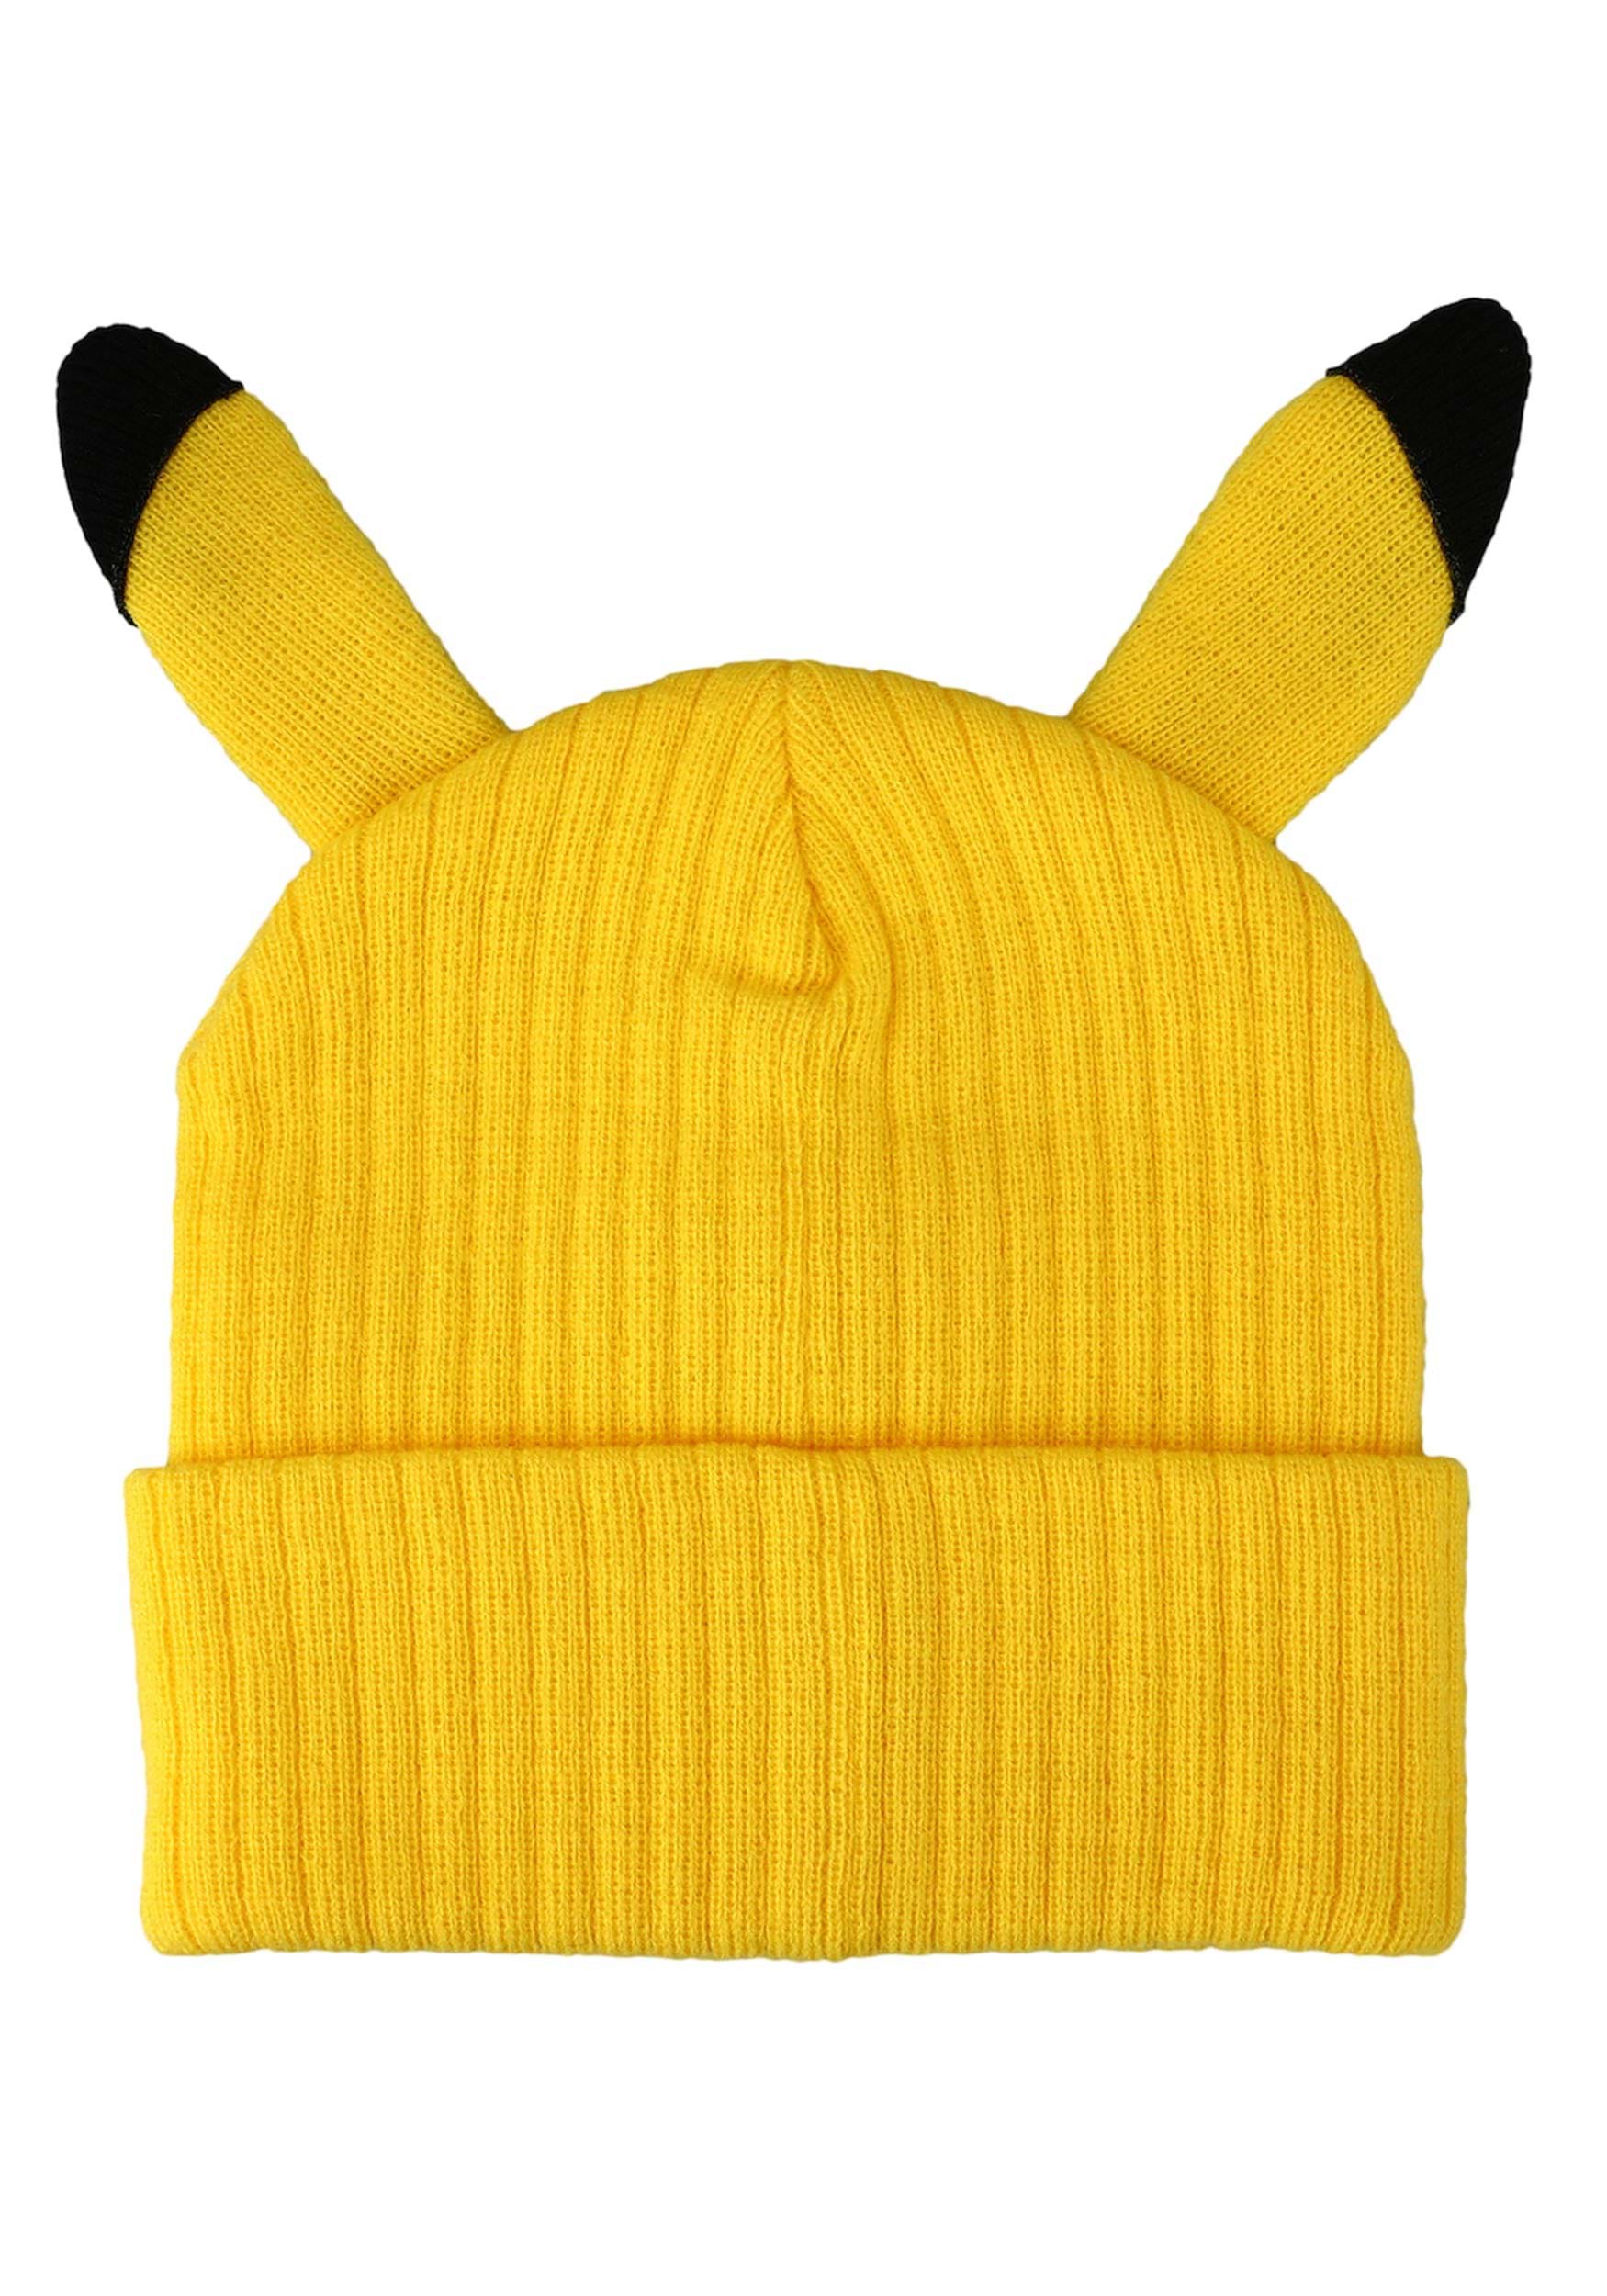 Pokémon Pikachu 3D Cosplay Cuff Beanie